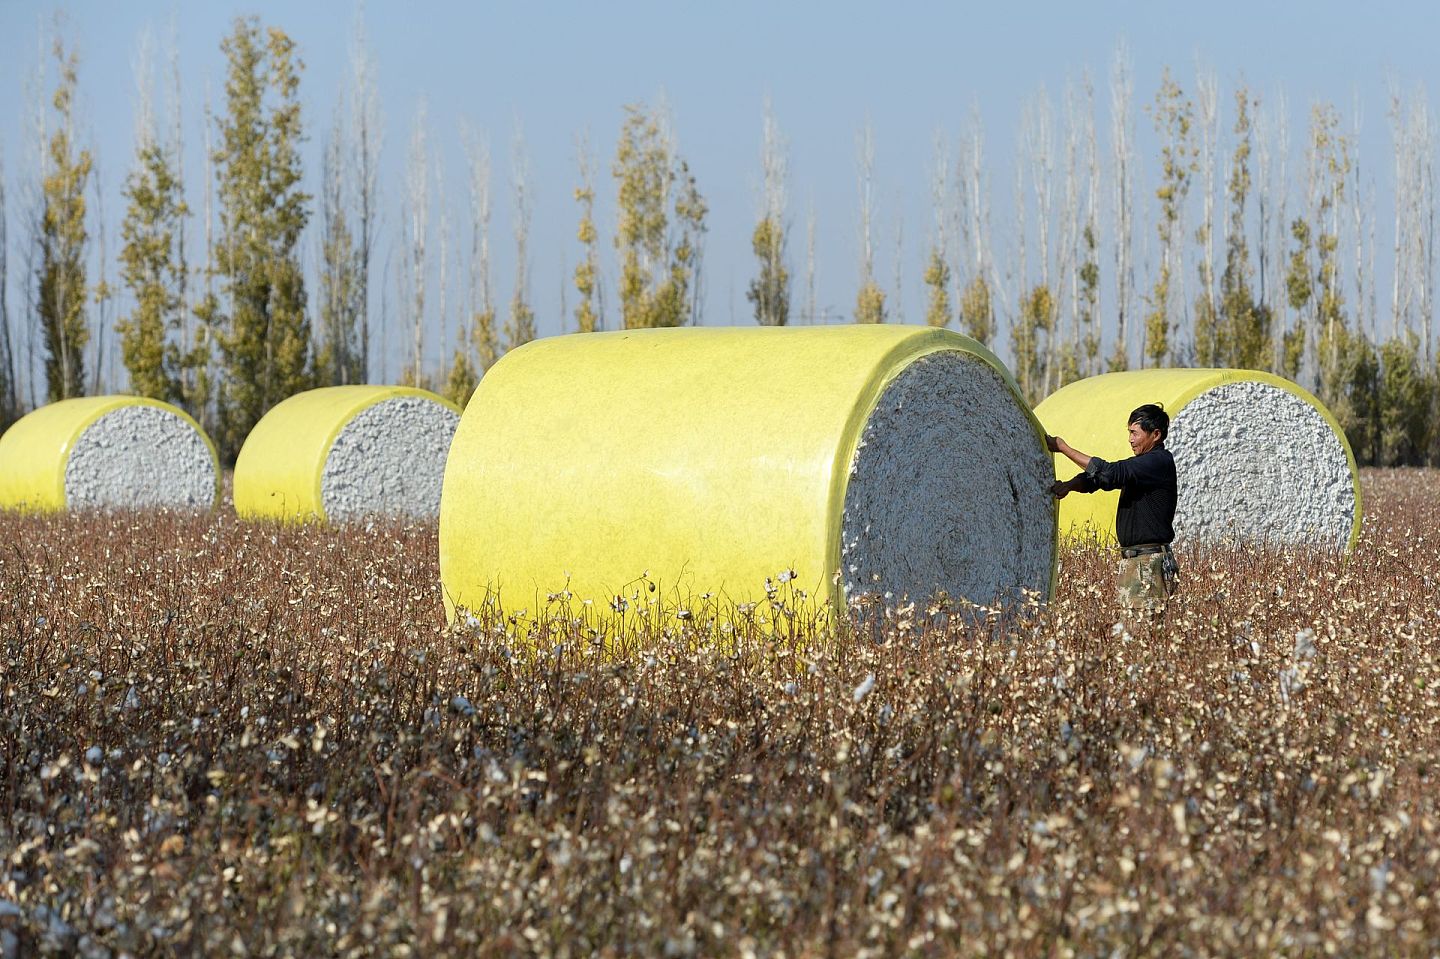 相对于西方世界想象中的新疆棉田“强制劳动”，新疆的棉业大多已进入机械化集约型大规模运作的状态。这也使得其产品质量要好于人力采摘。美国约翰迪尔公司的产品也在当地大受欢迎。（新华社）